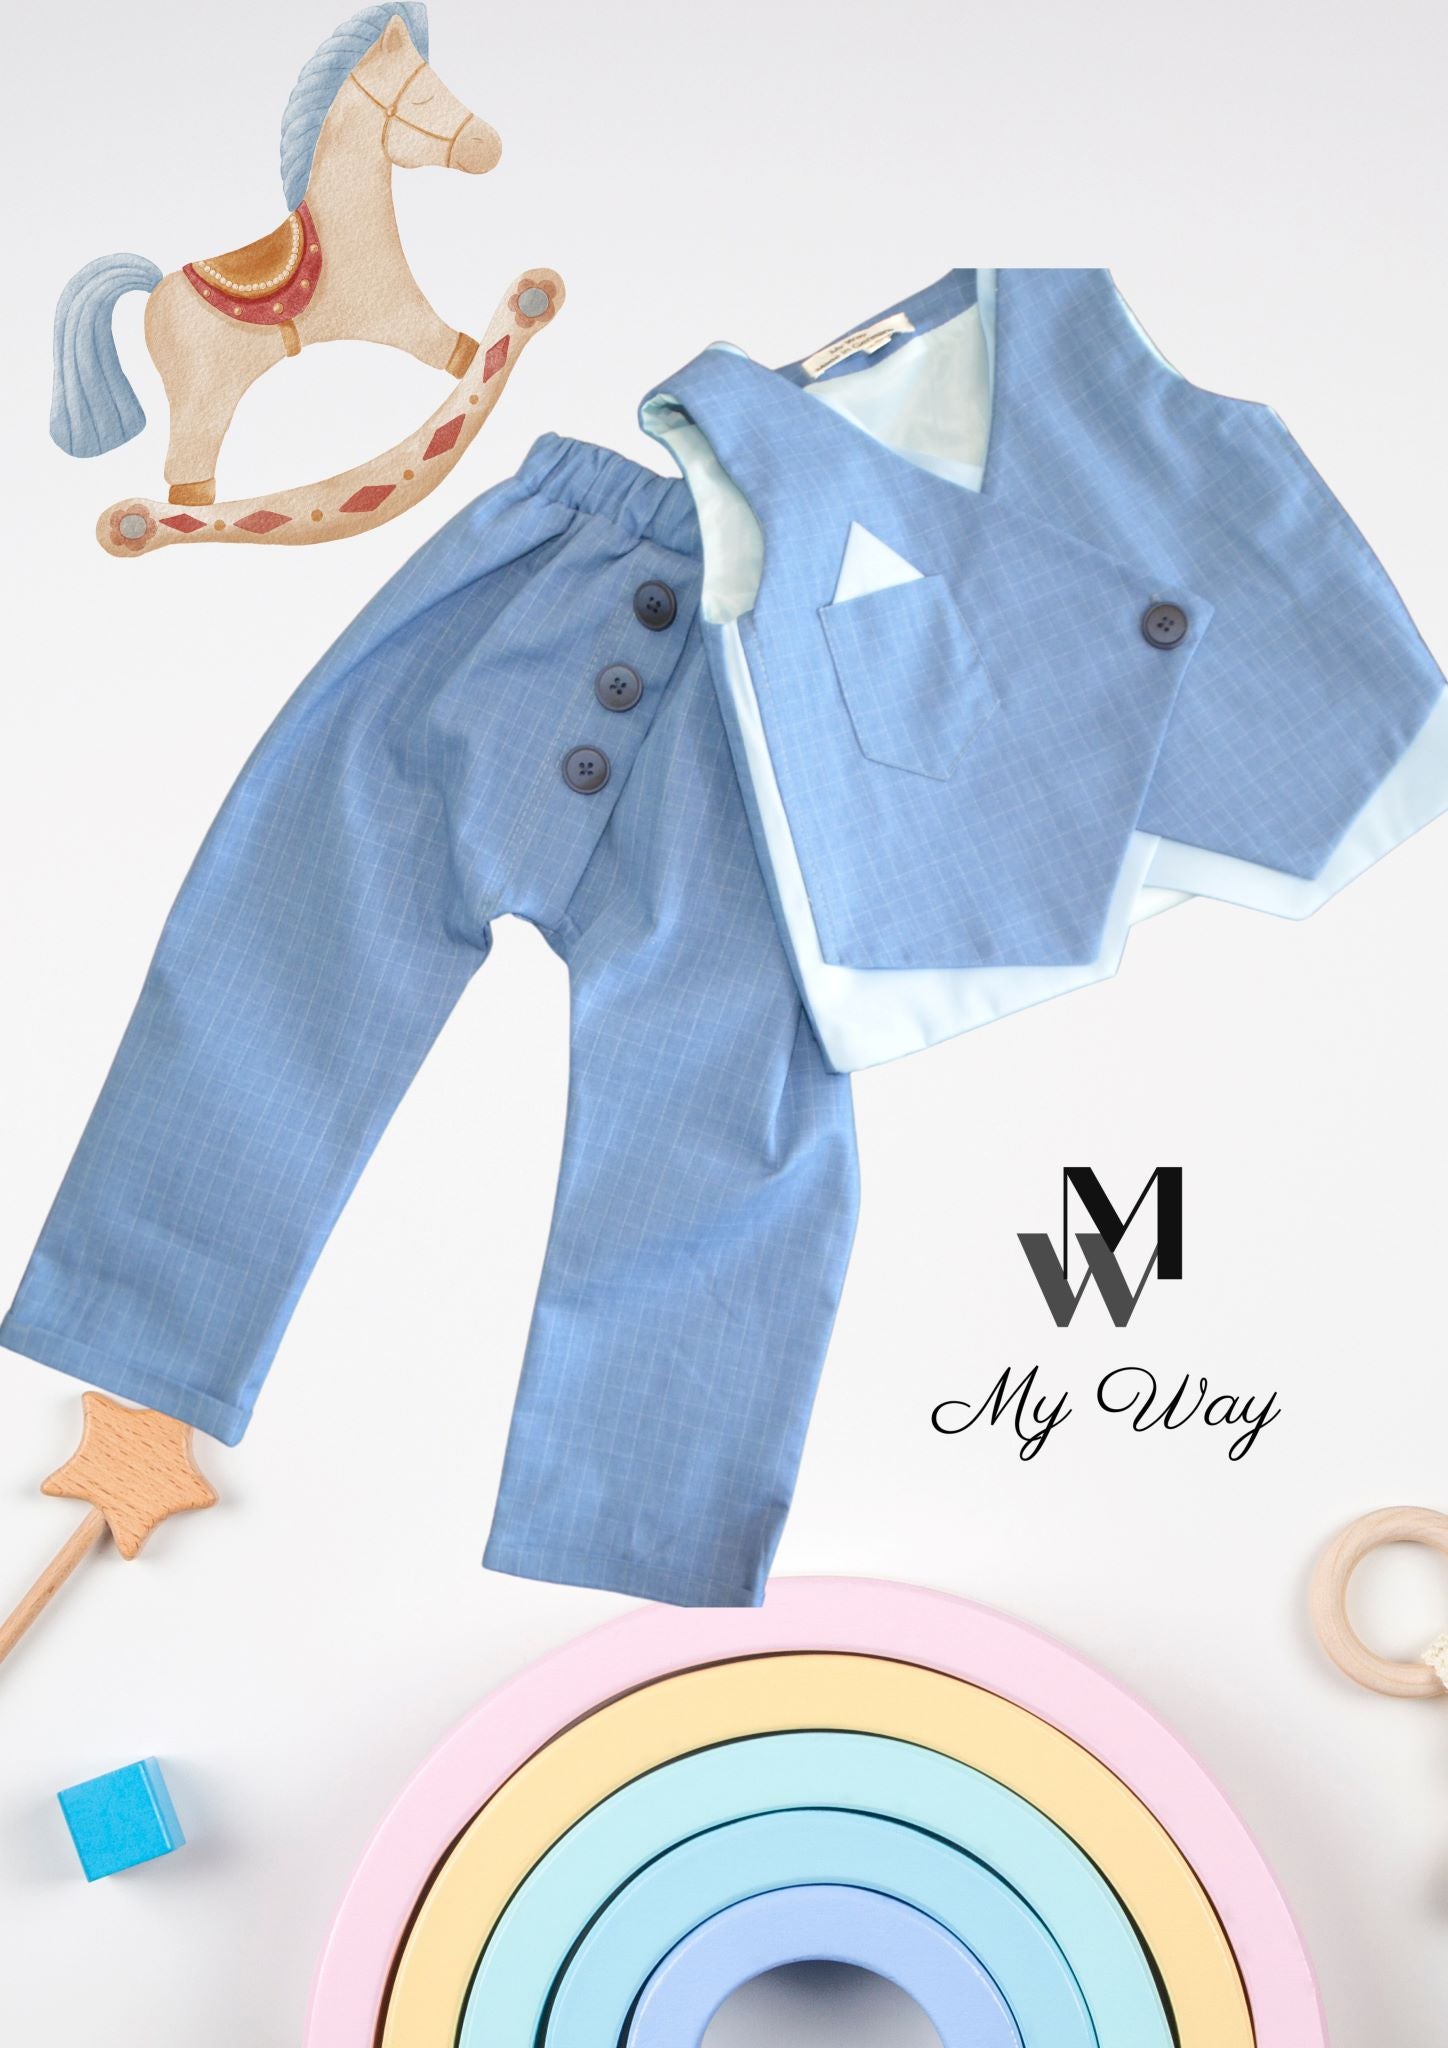 Hochwertige Kinderanzüge von My Way D&A Blau Kinder-Anzüge online kaufen Anzug für Jungen mit Weste- BLAU zu günstigen Preisen